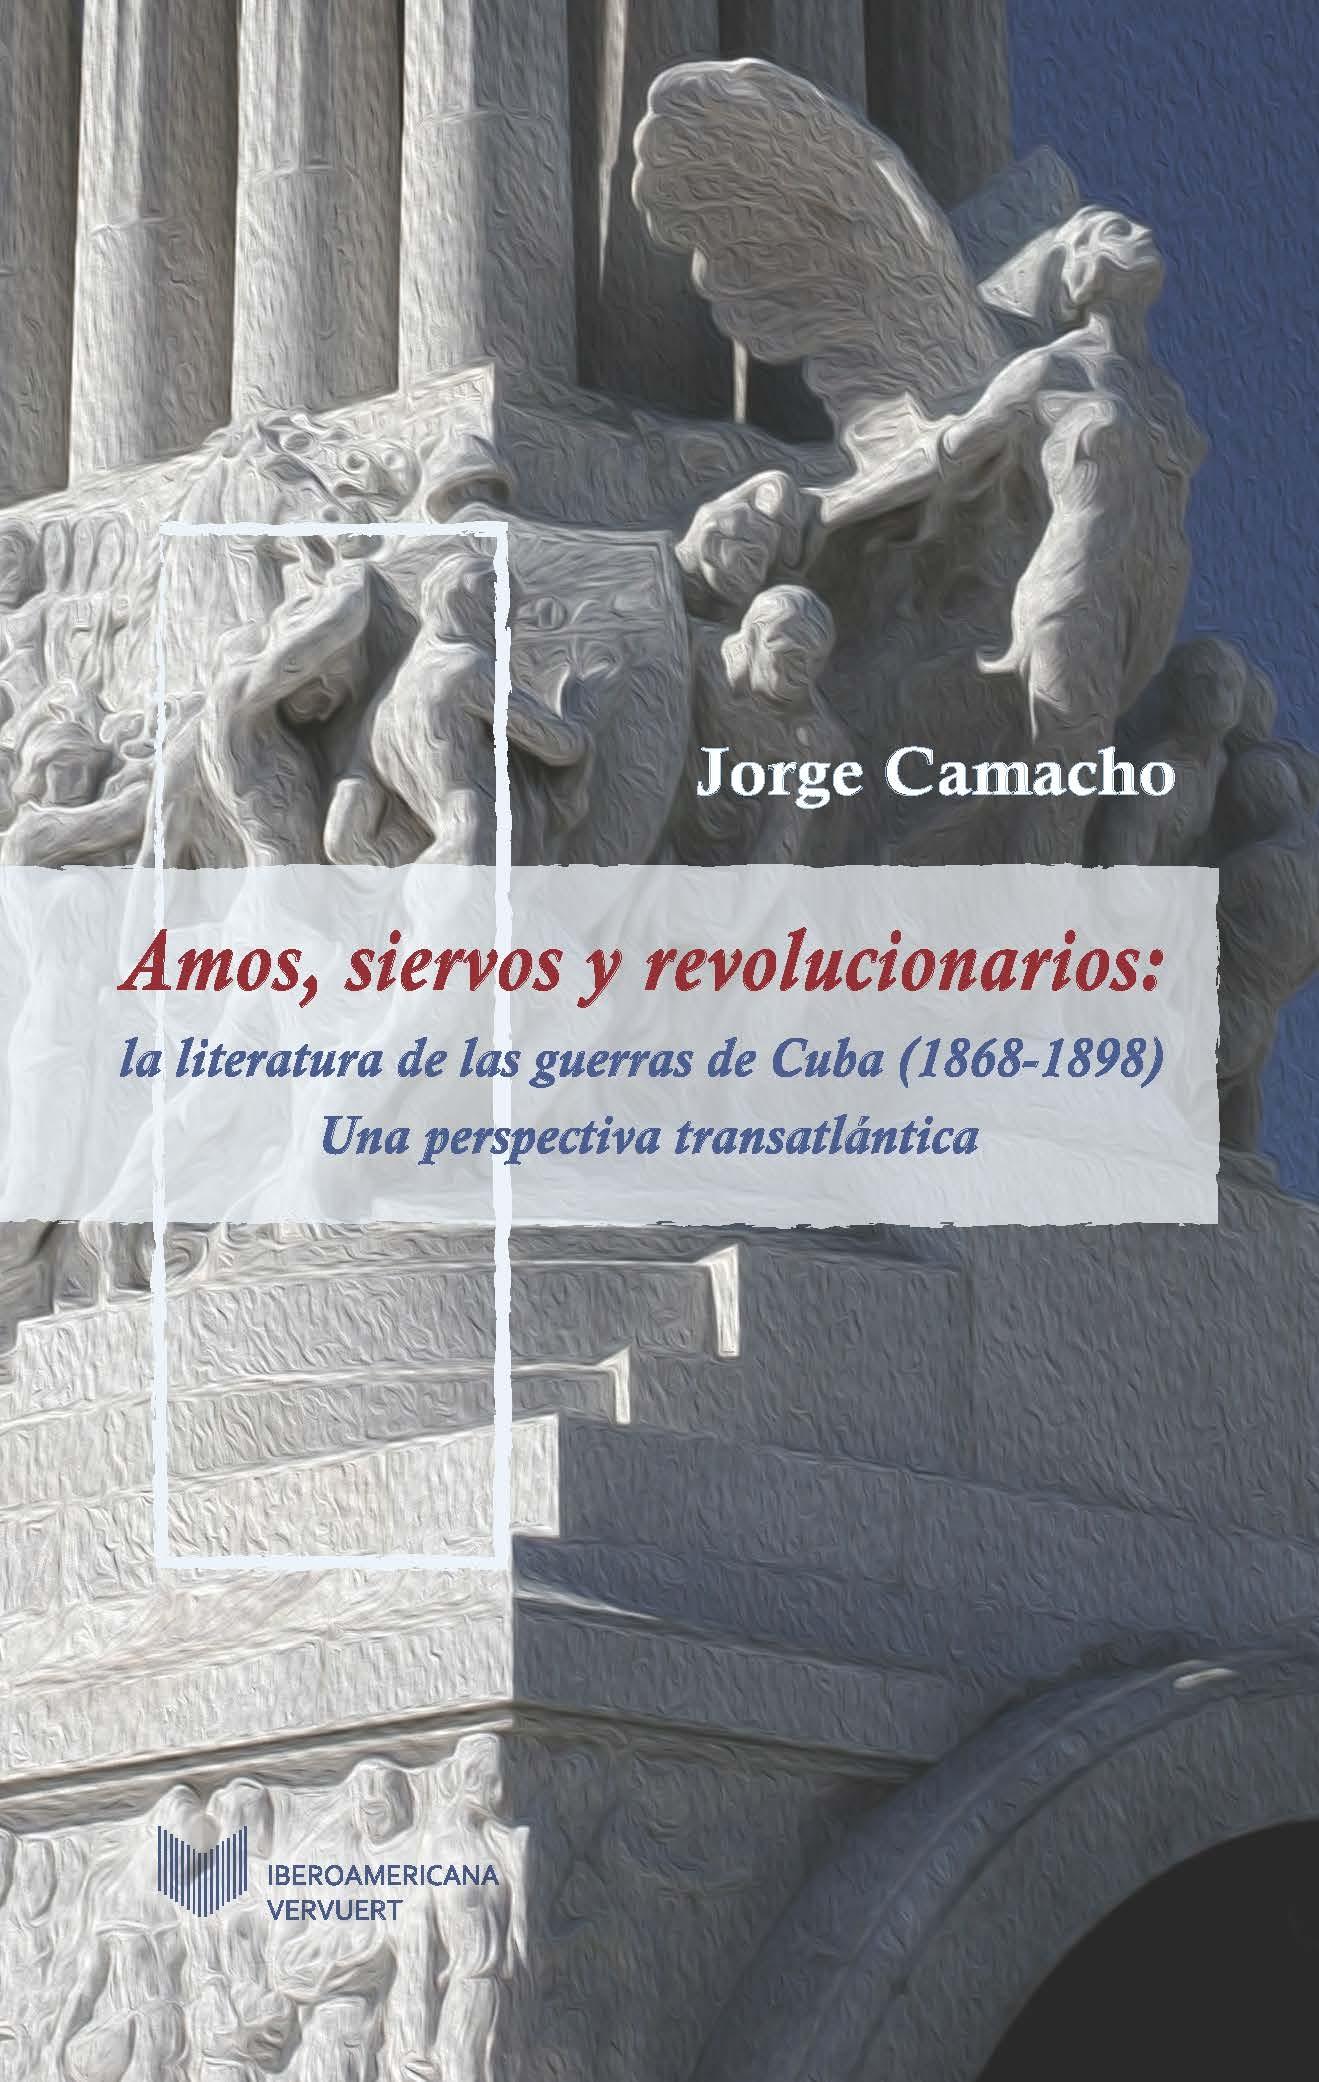 Amos, siervos y revolucionarios: la literatura de las guerras de Cuba (1868-1898) "Una perspectiva transatlántica"